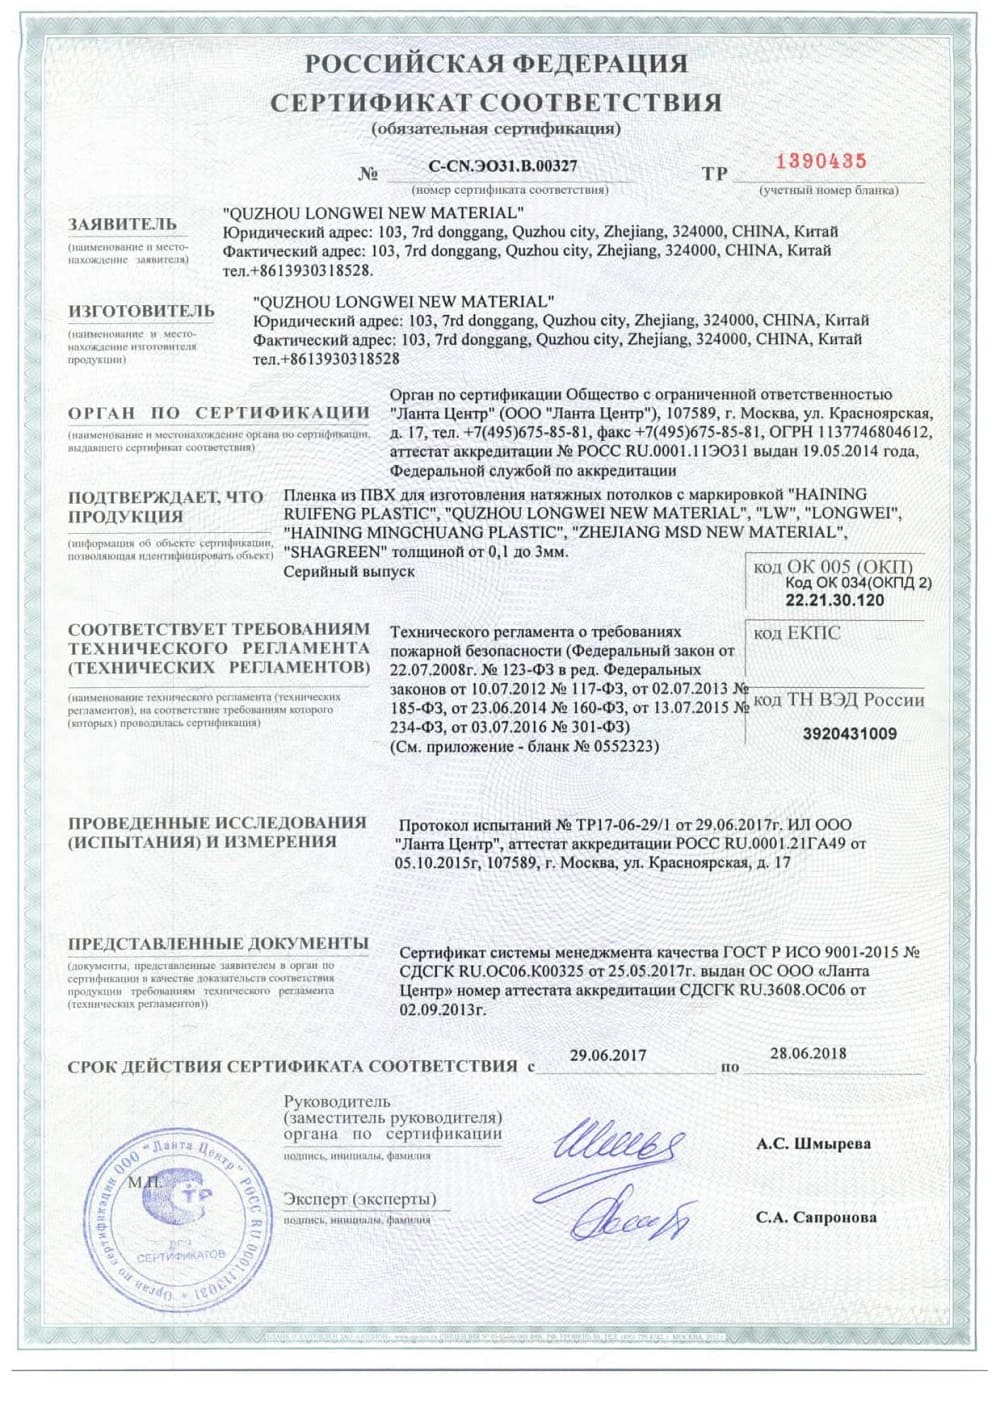 Сертификат соответствия на натяжные полотна Alezi с нишами